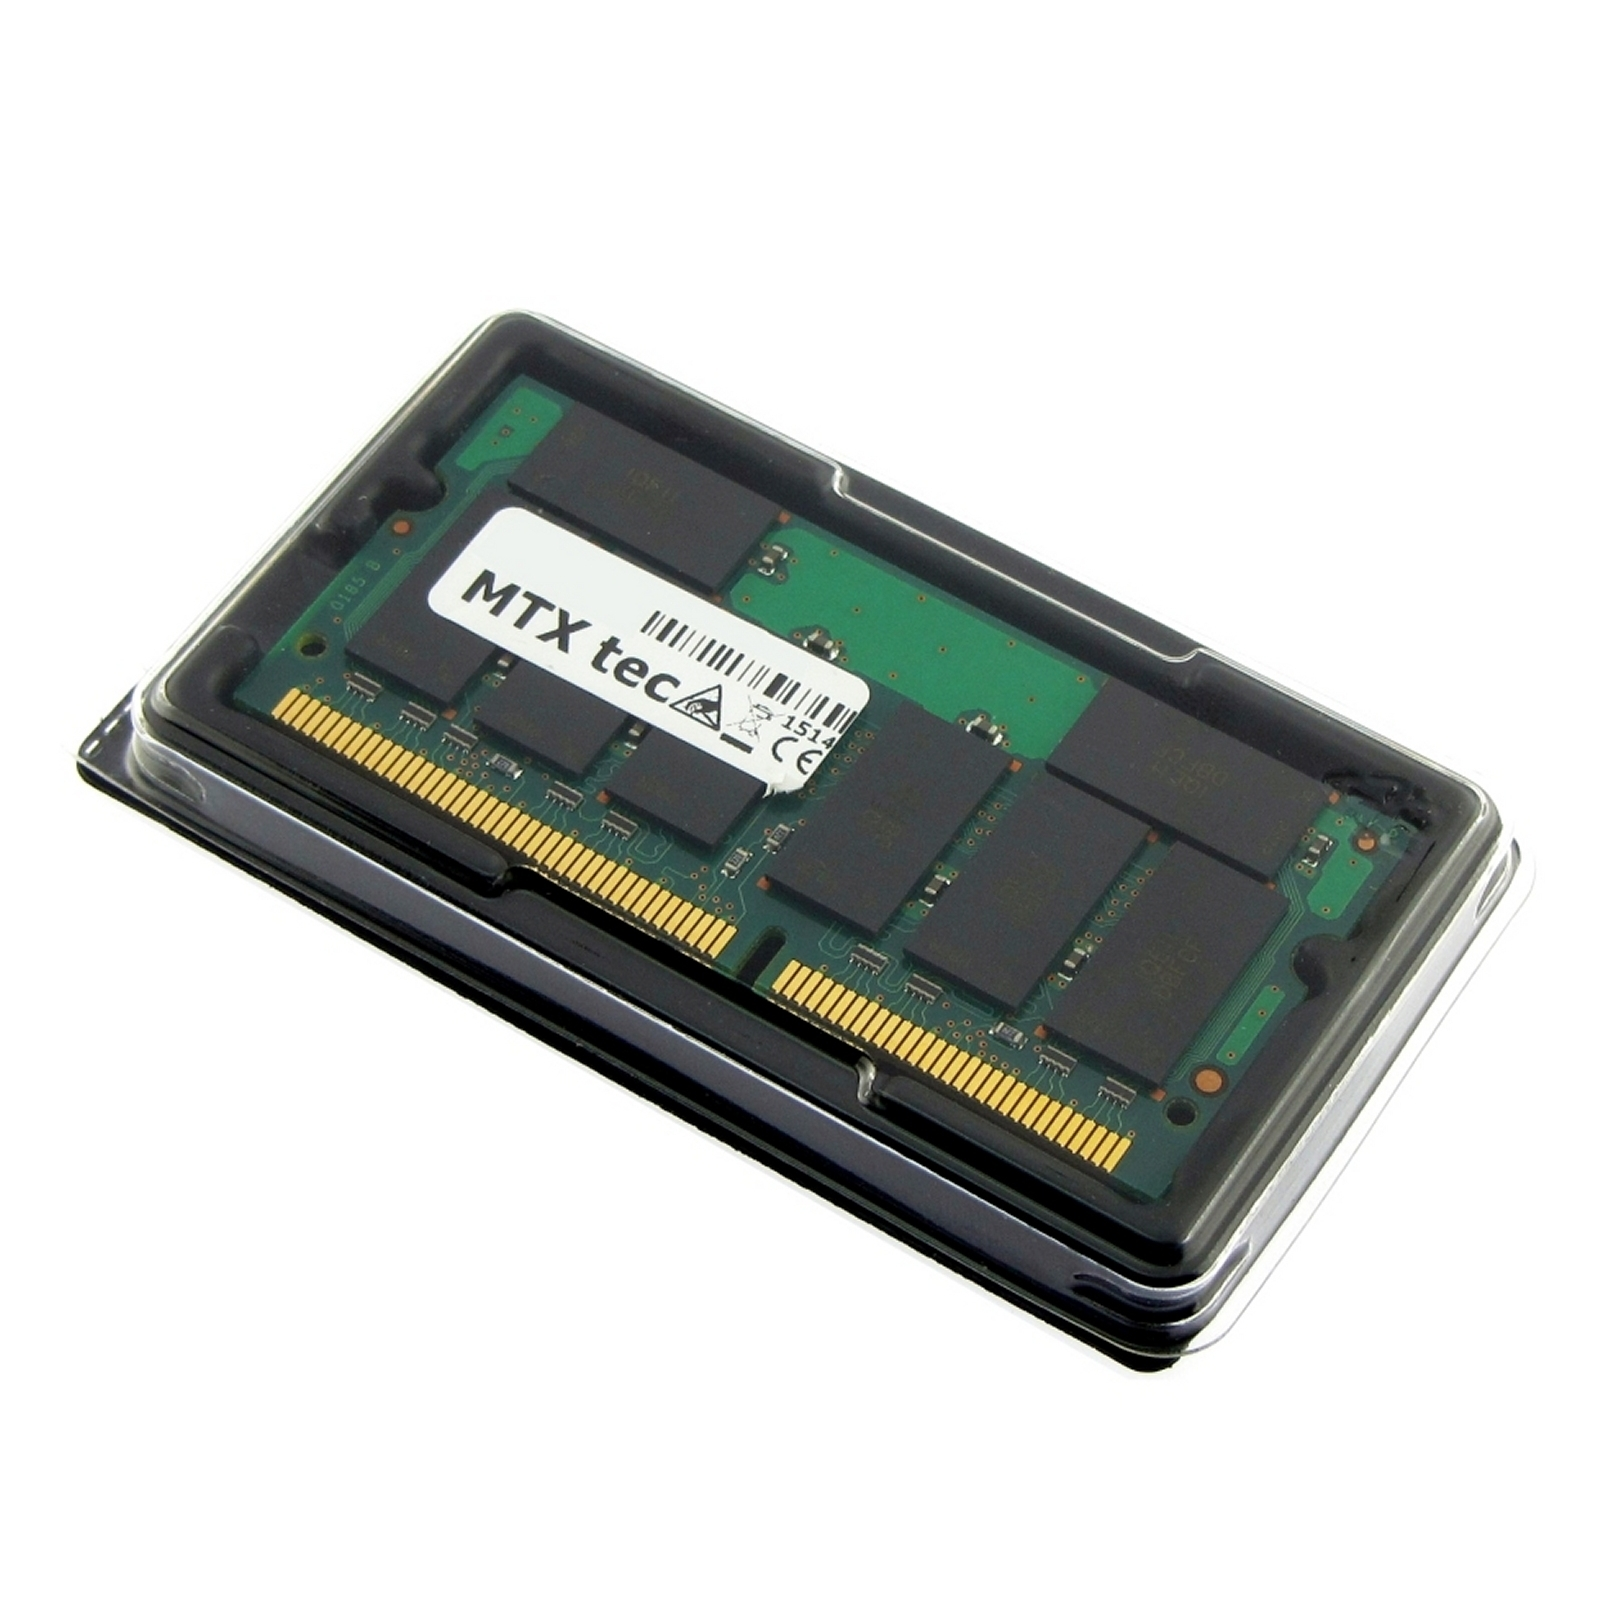 RAM MB MB MTXTEC SDRAM 512 Notebook-Speicher ThinkPad (2884) für Arbeitsspeicher 512 X30